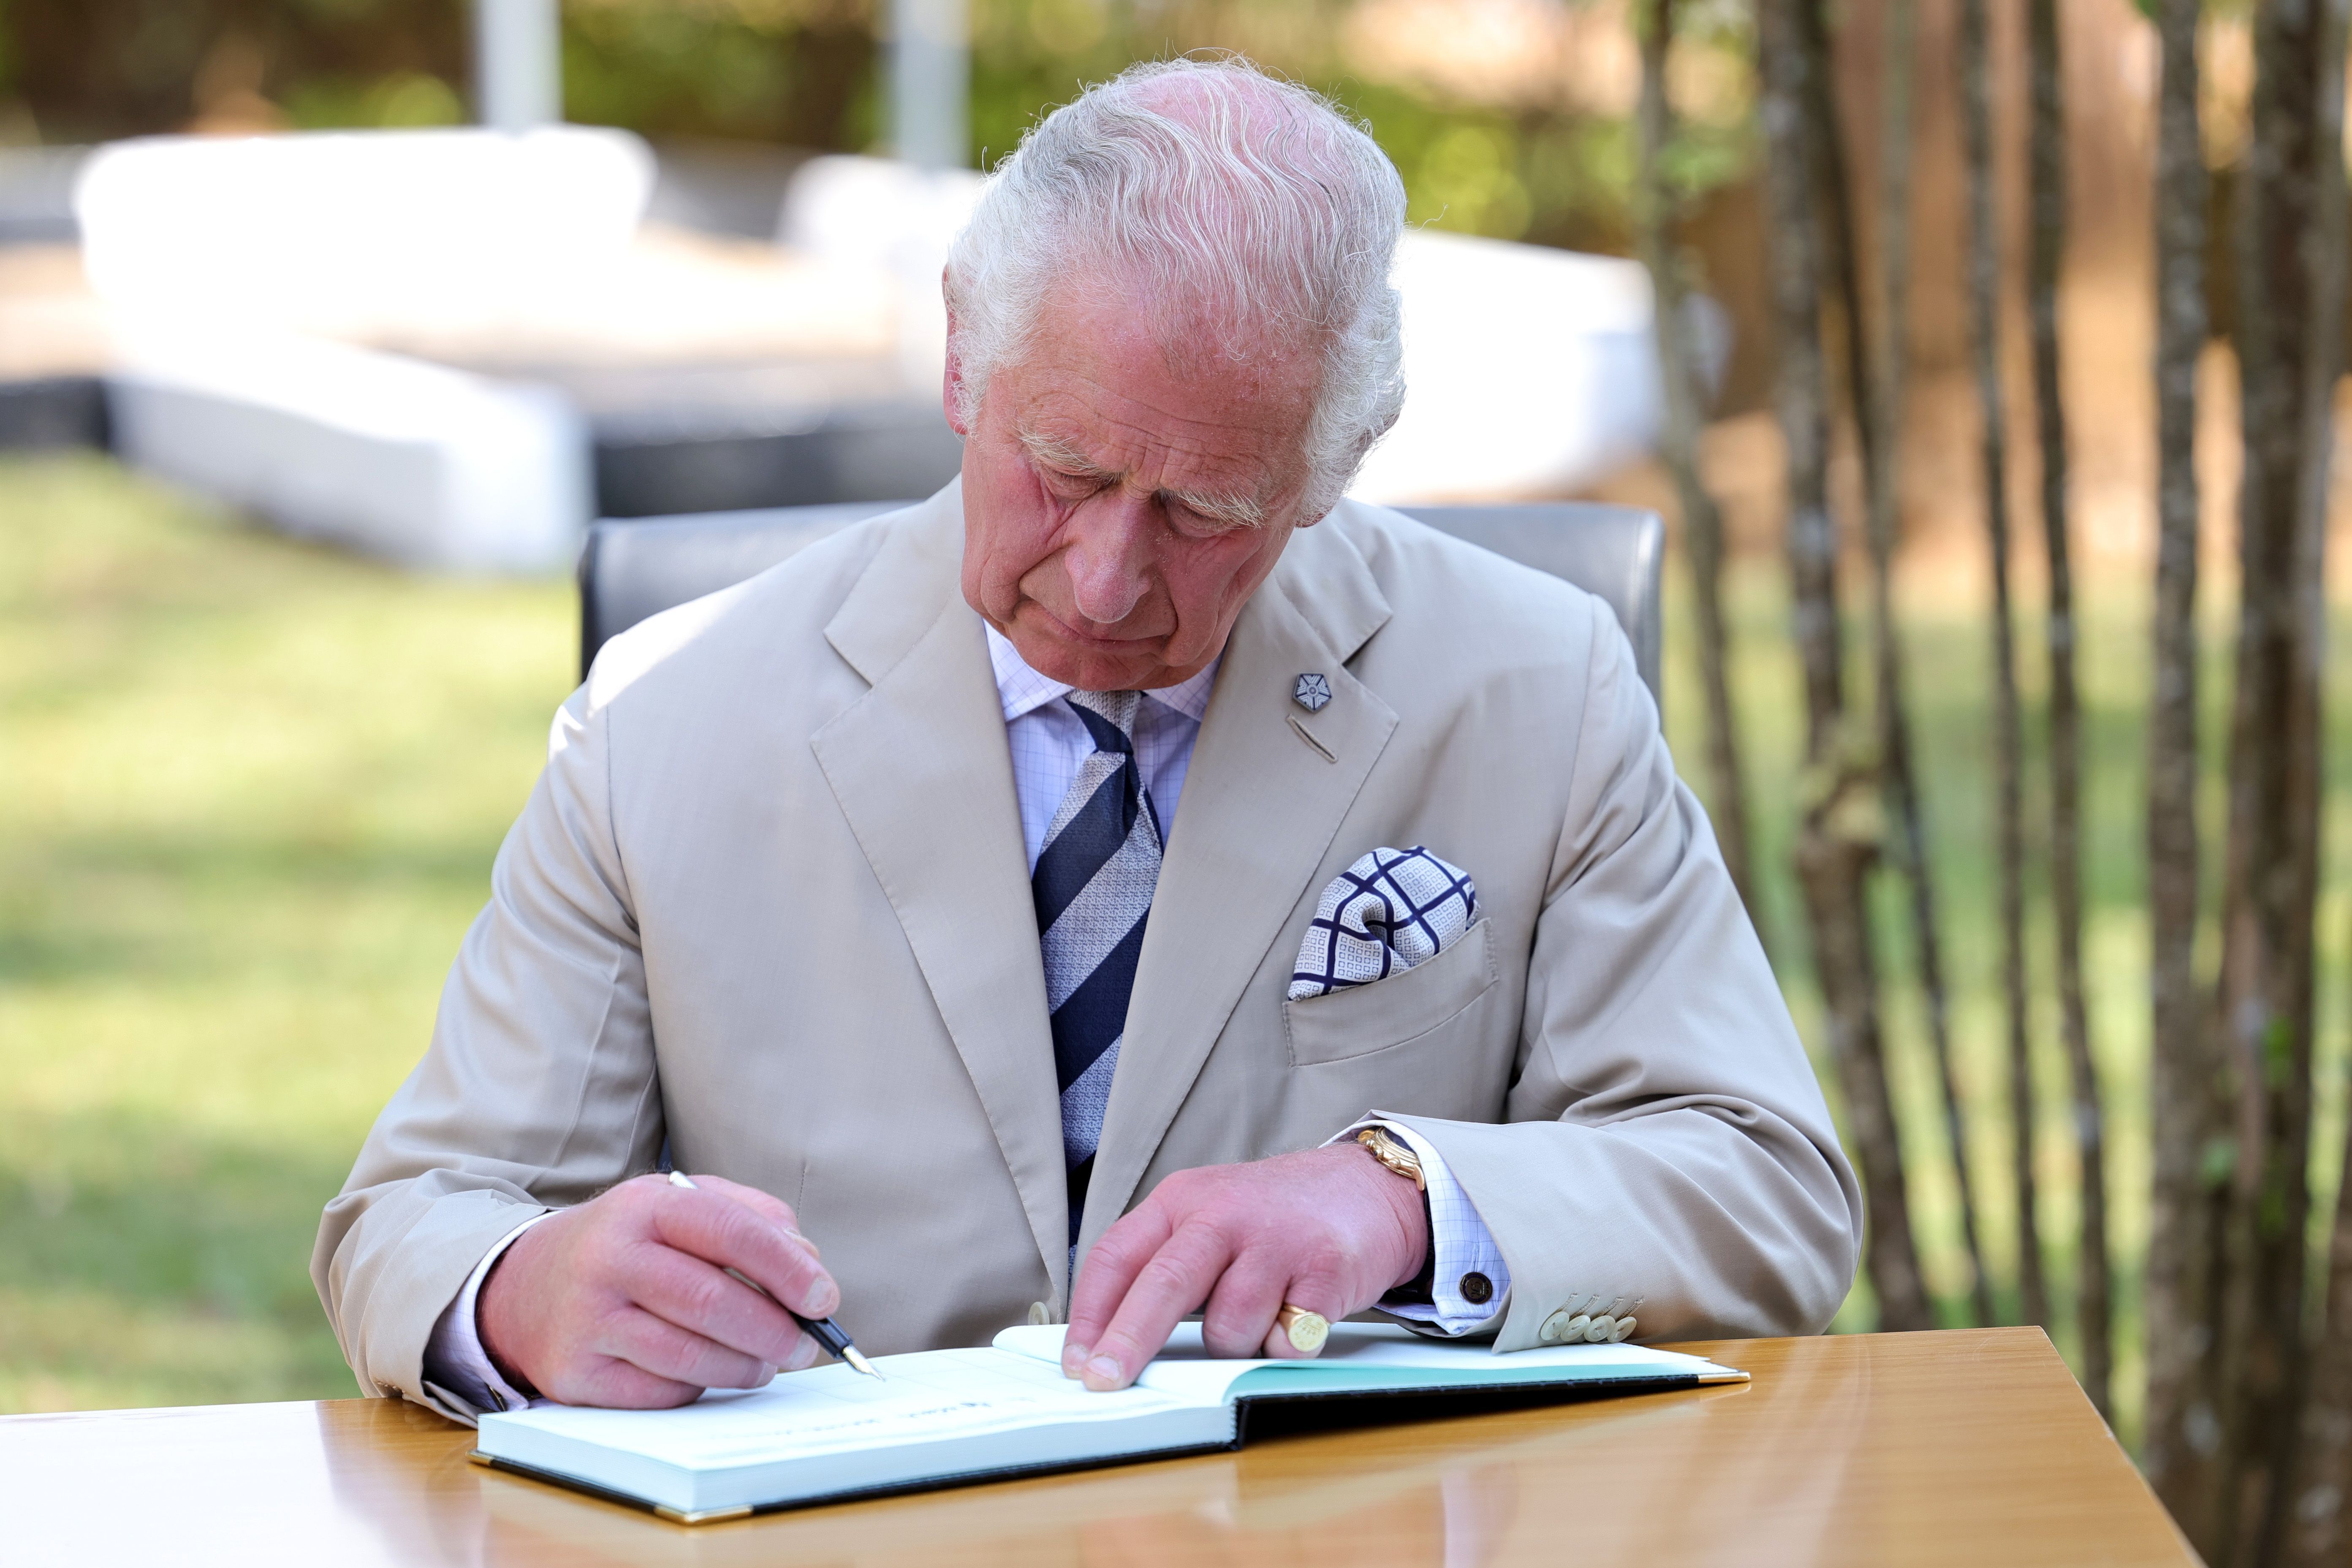 Damals noch unter dem Titel Prinz of Wales schreibt Charles bei einem Pressetermin in ein Gästebuch. Hoffentlich hat er sich nicht verschrieben, denn jegliche nicht mehr benötigte Papierkorrespondenz des heutigen Königs wird zu Kompost.